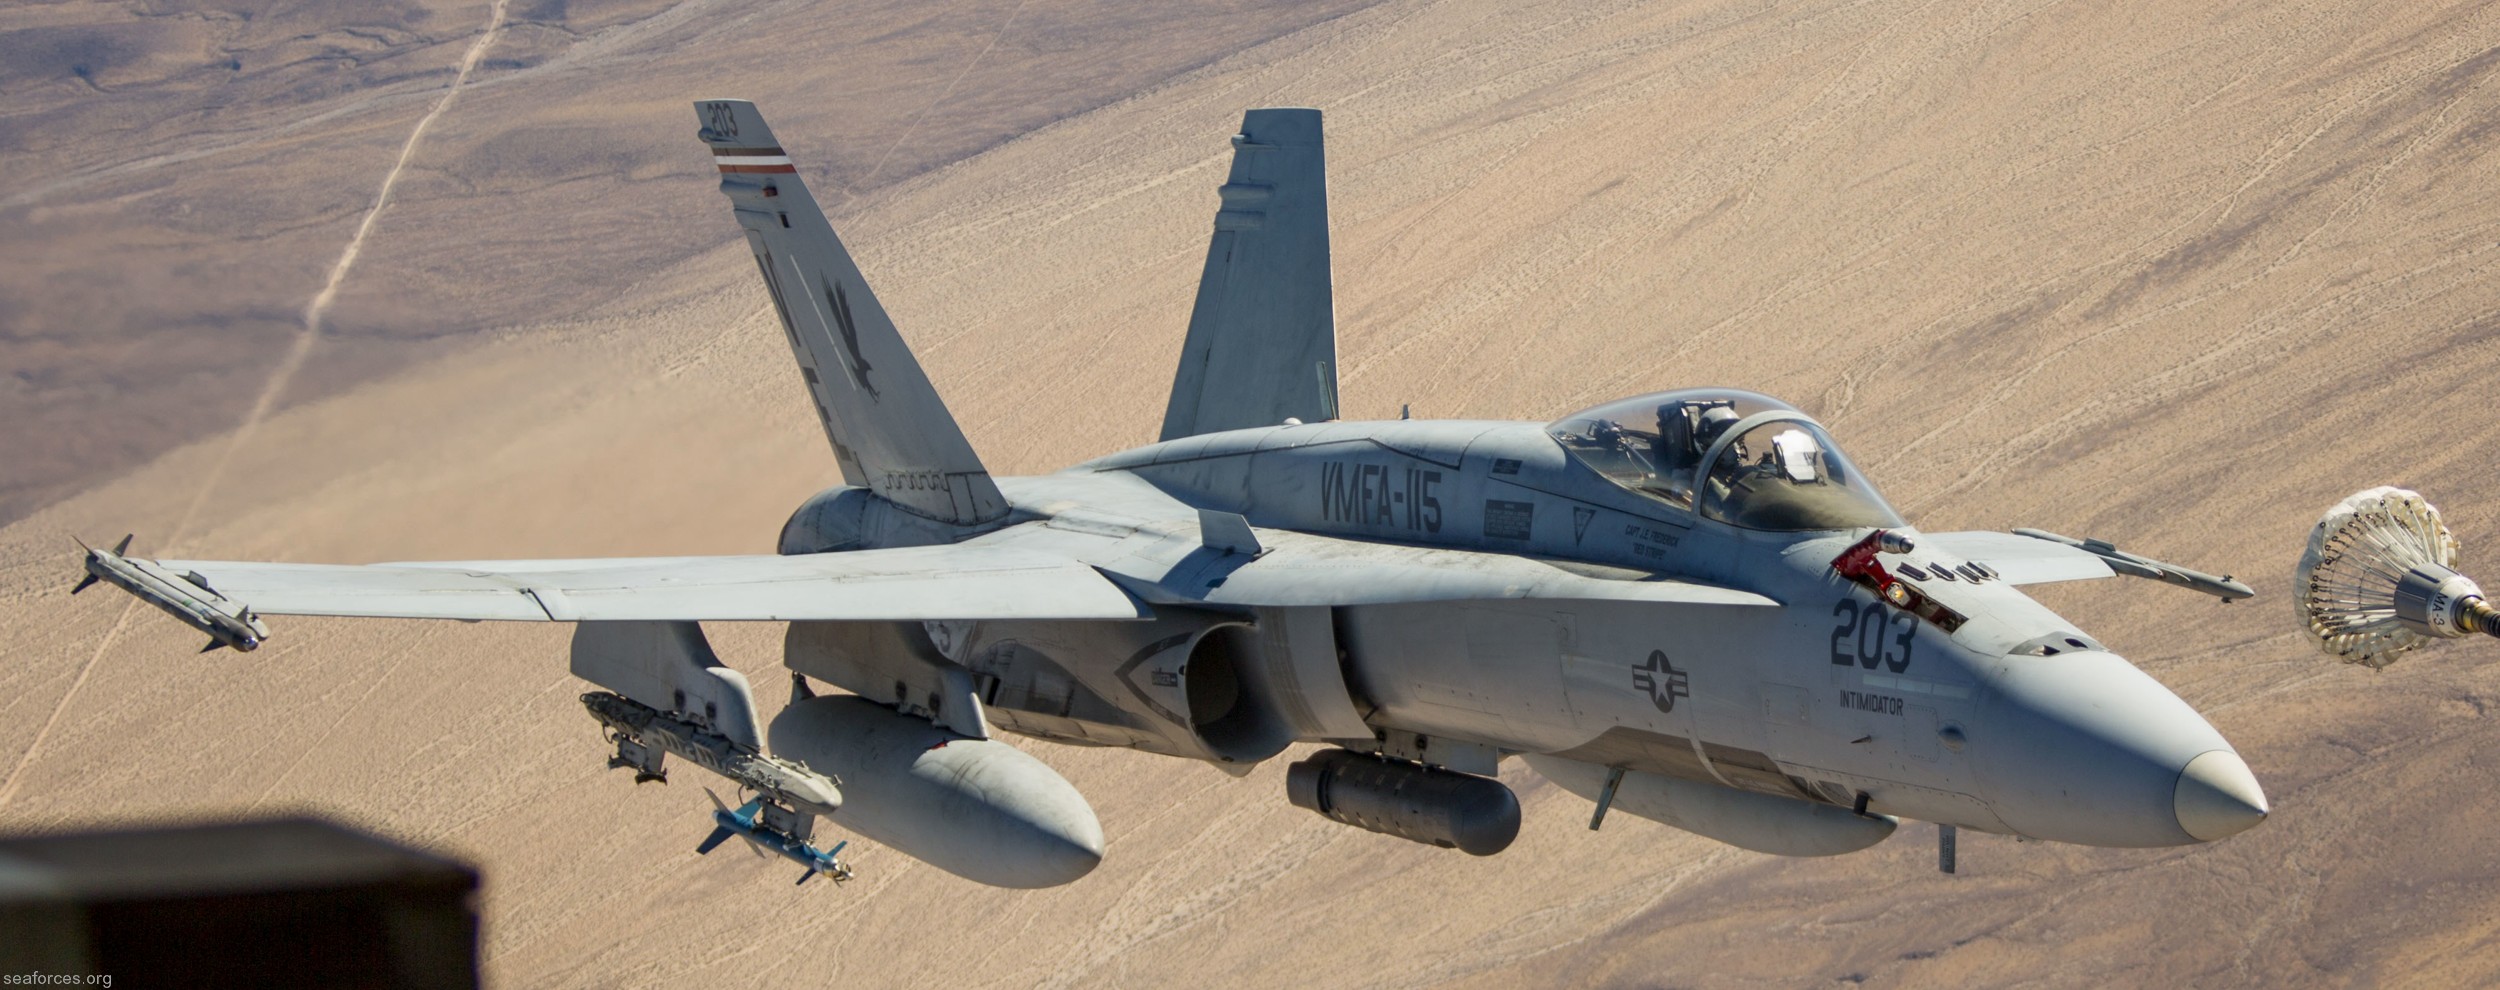 vmfa-115 silver eagles marine fighter attack squadron f/a-18a+ hornet 93